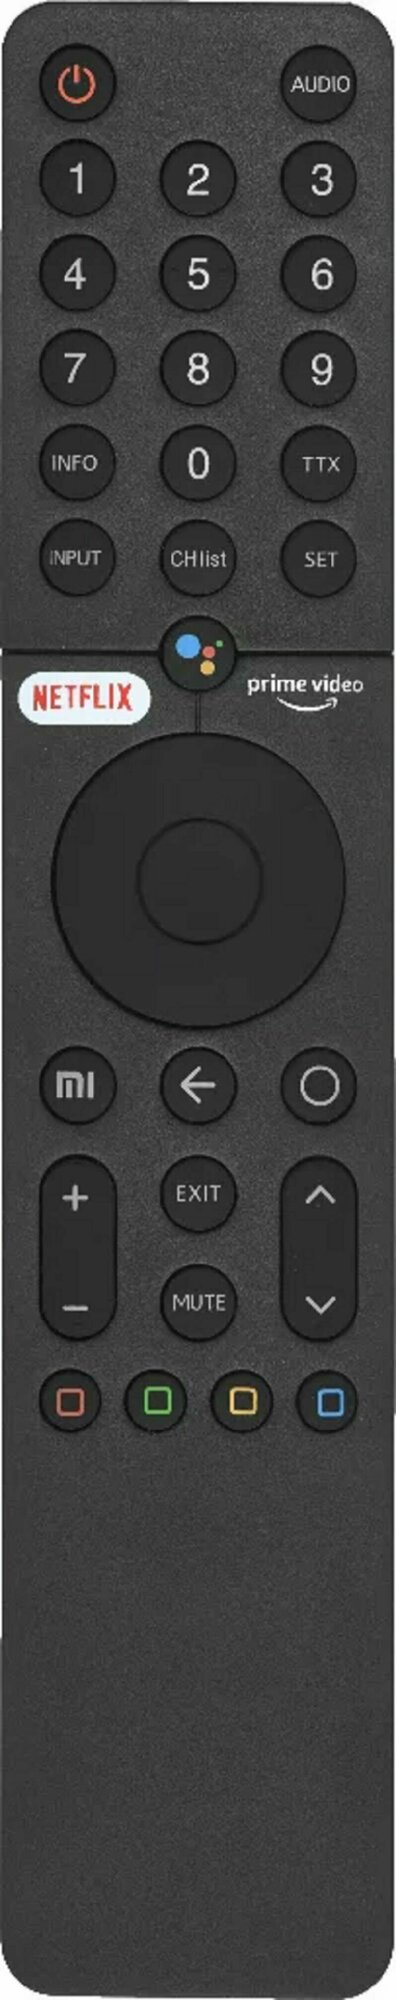 Пульт XMRM-19 для XIAOMI Mi ver.7 Q1 LCD TV с голосовым управлением